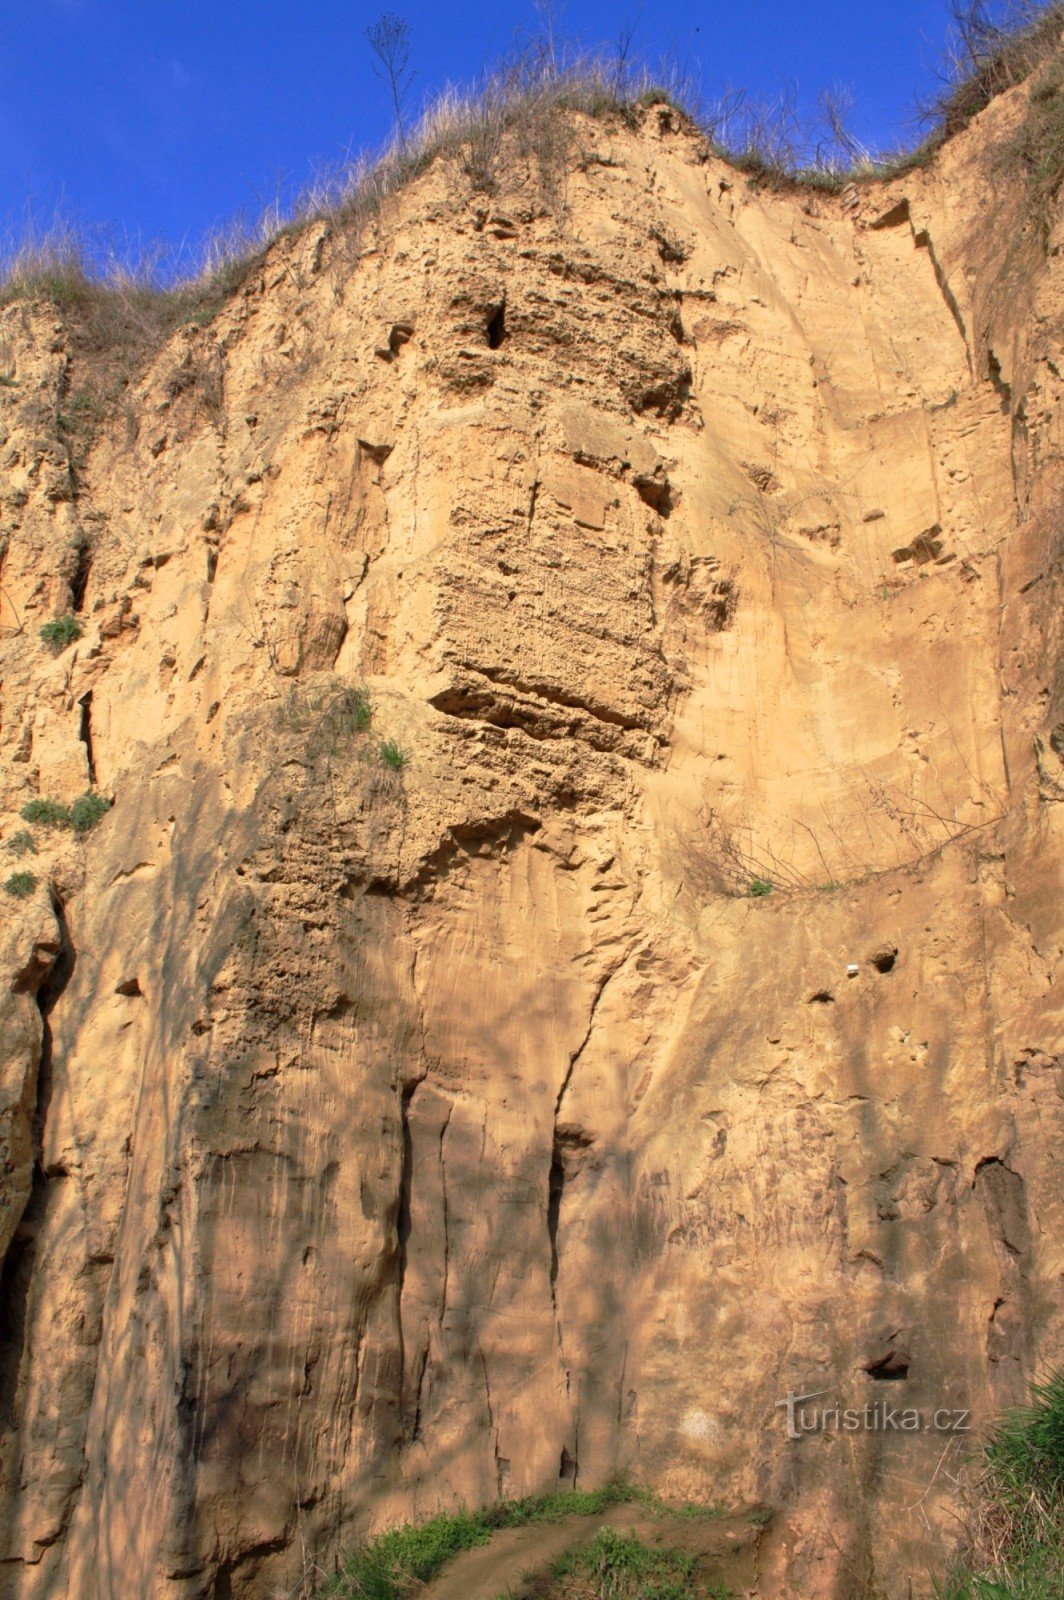 Una vista dettagliata della parete della cava di sabbia